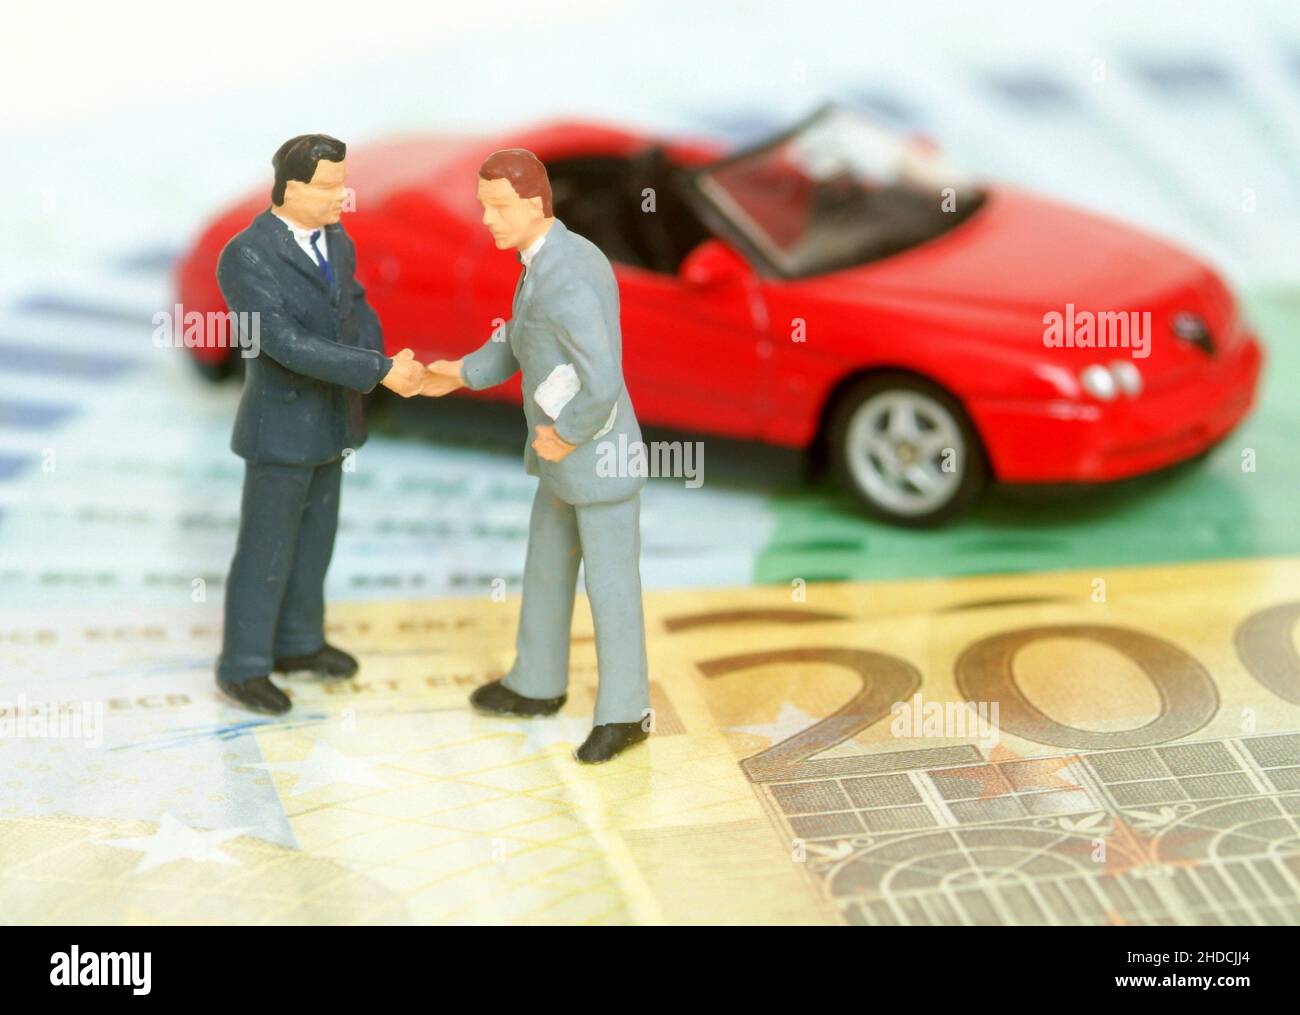 Autokauf per Handschlag, Roter Sportwagen wird verkauft, Symbolfoto, Symbolbilder, Foto Stock